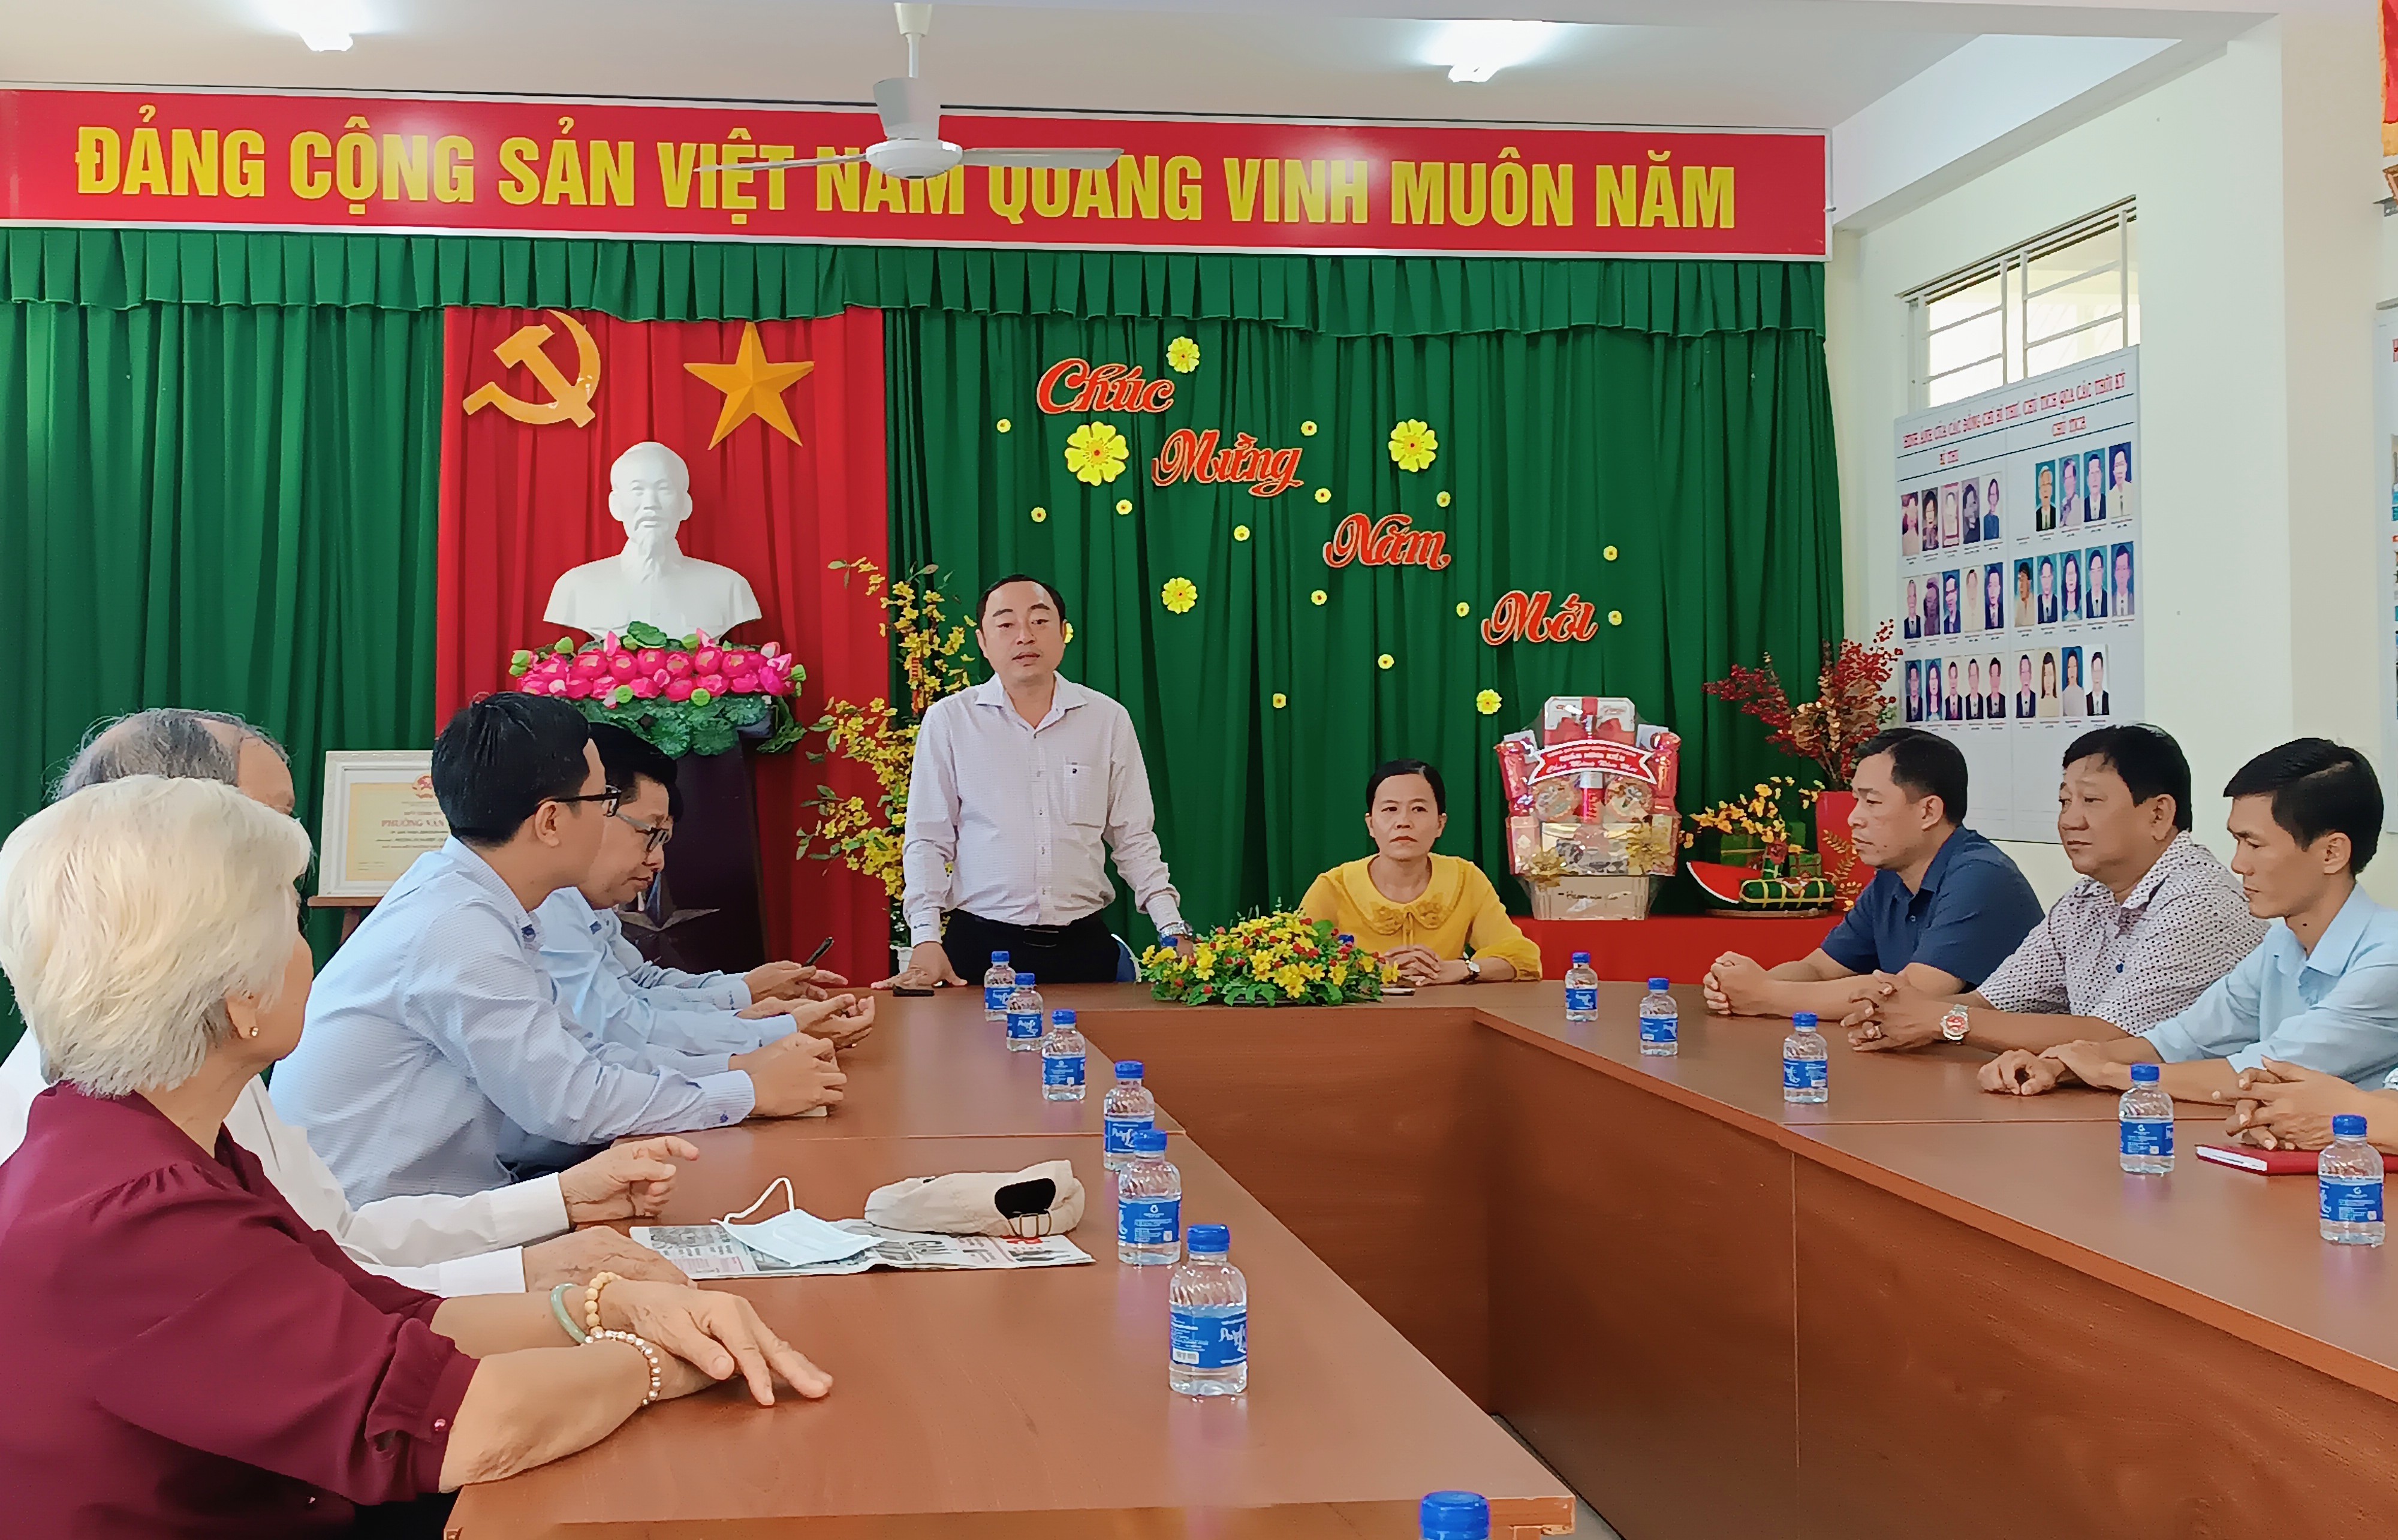 Ông Mai Xuân Bình, Phó chủ tịch HĐND quận Ninh Kiều thăm và tặng quà cho các đơn vị trên địa bàn